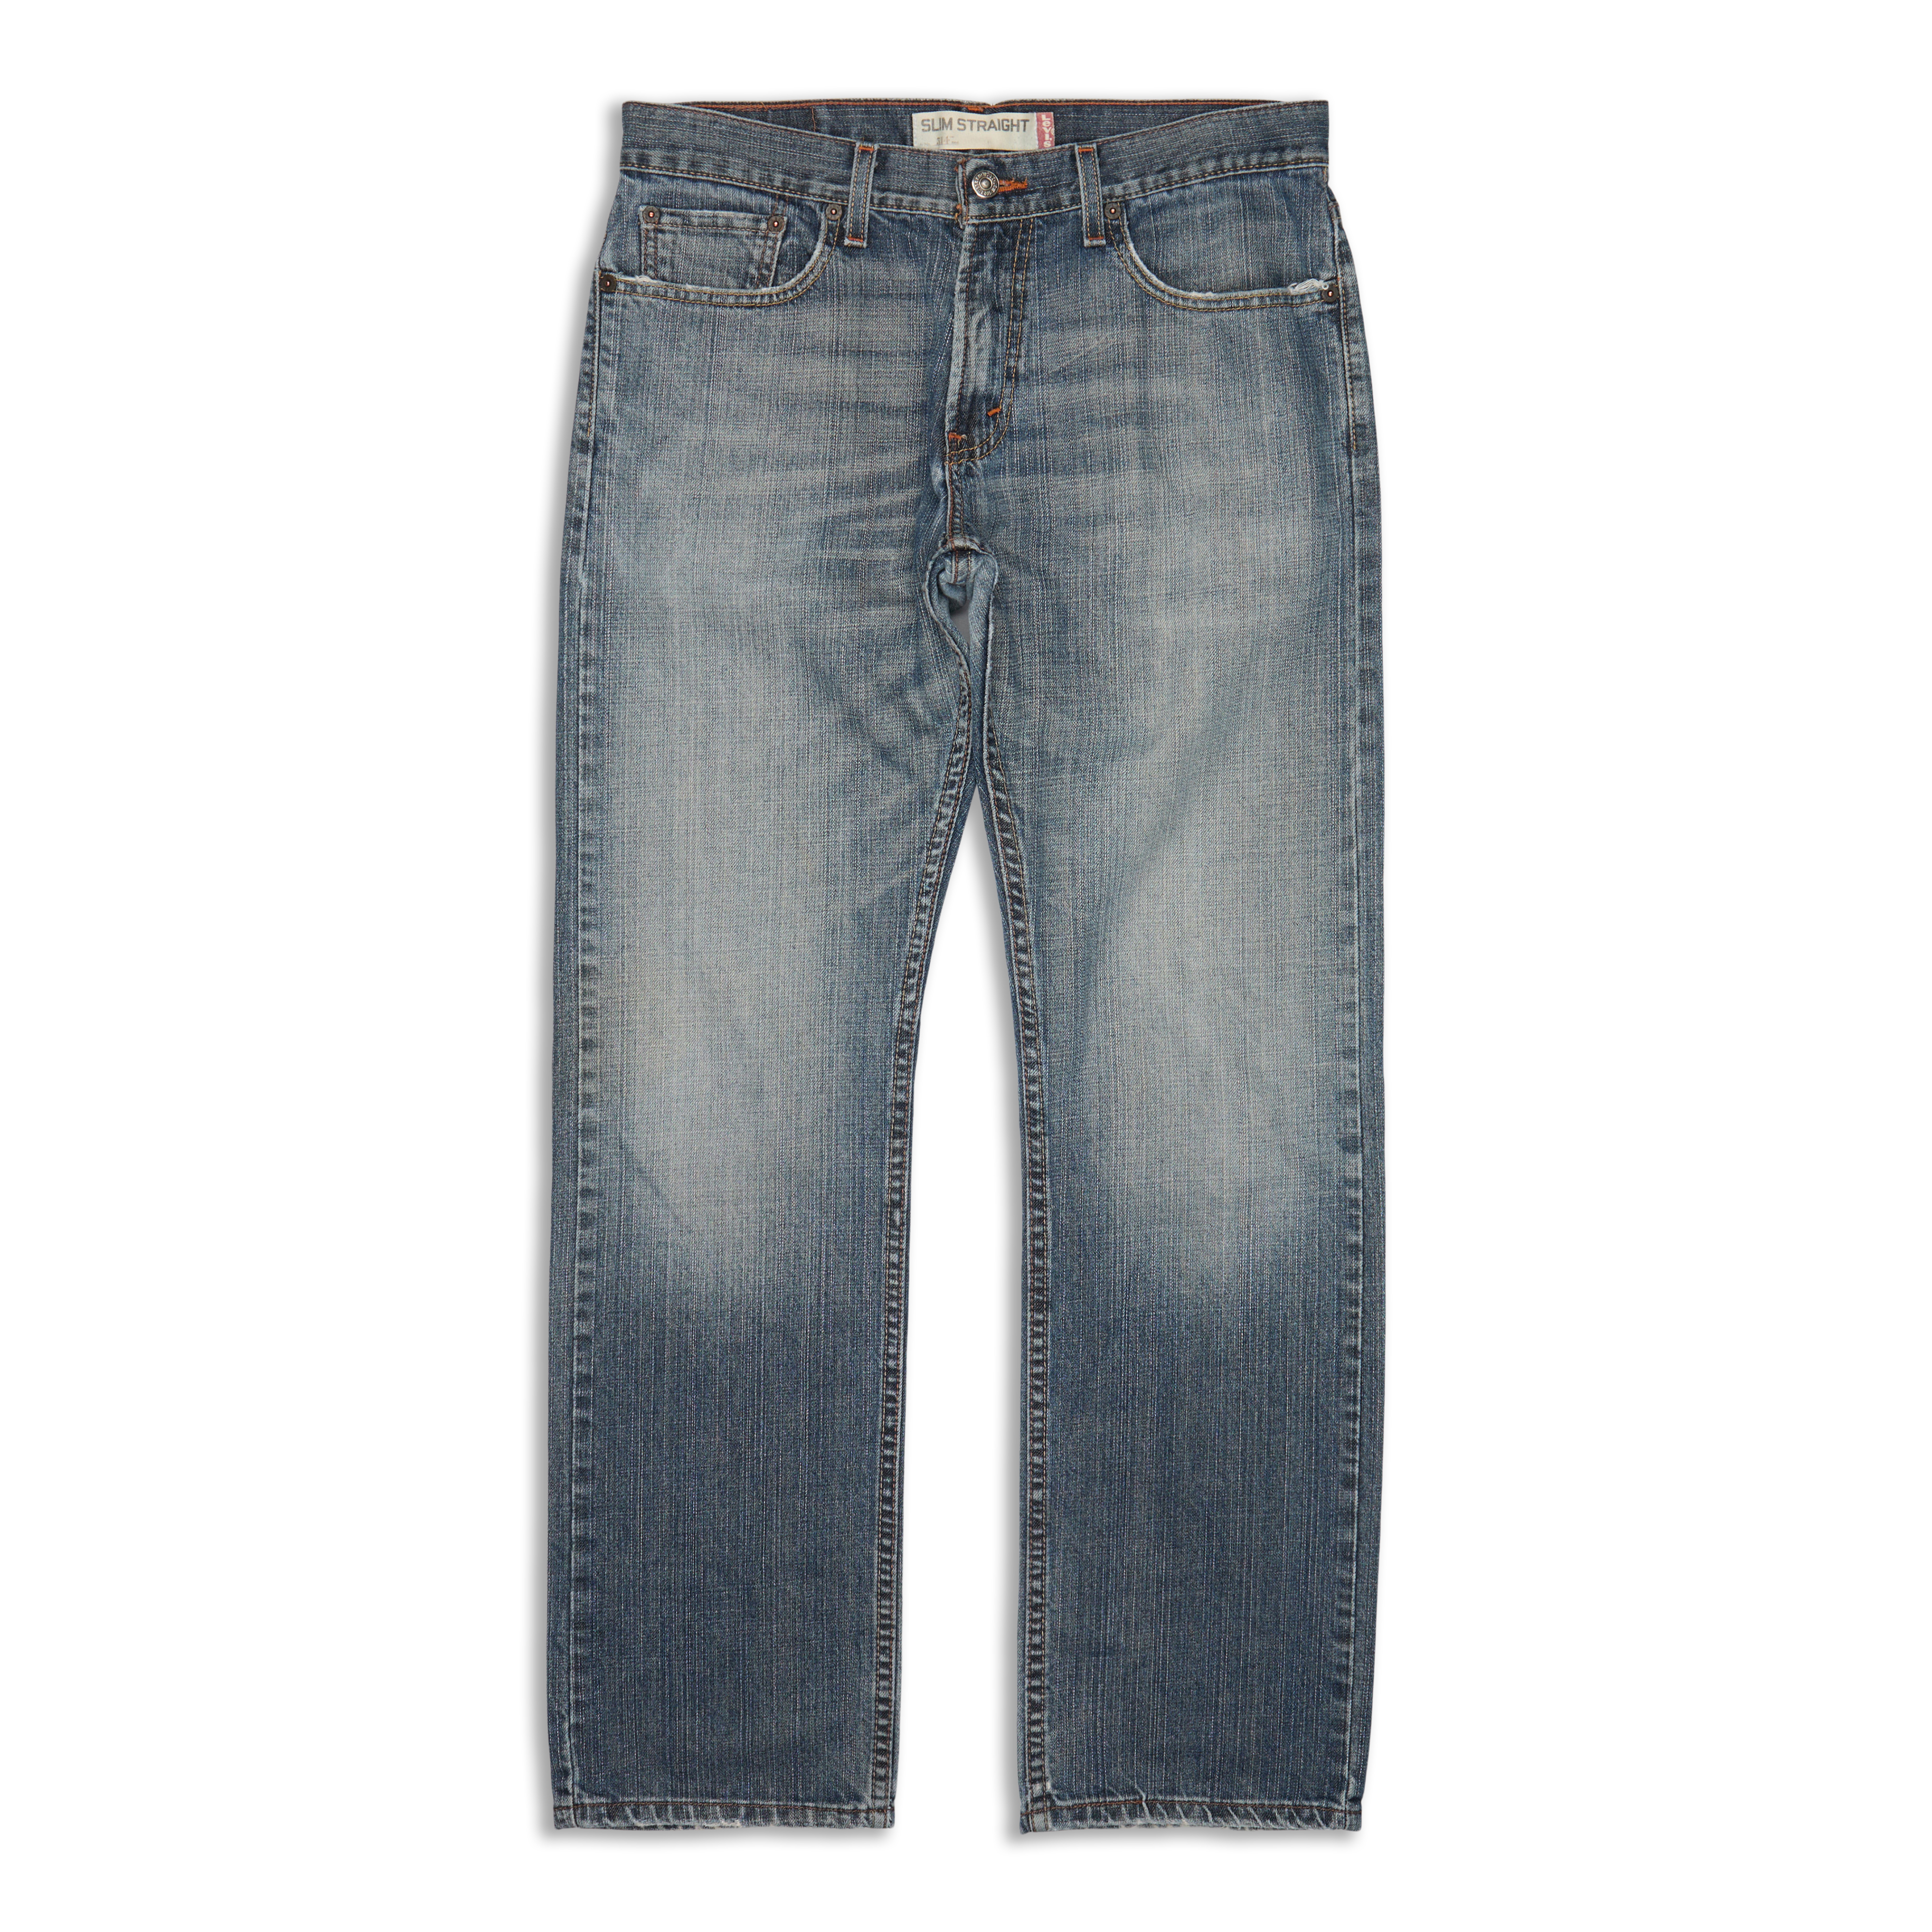 Levis 514™ Straight Fit Men's Jeans Blue